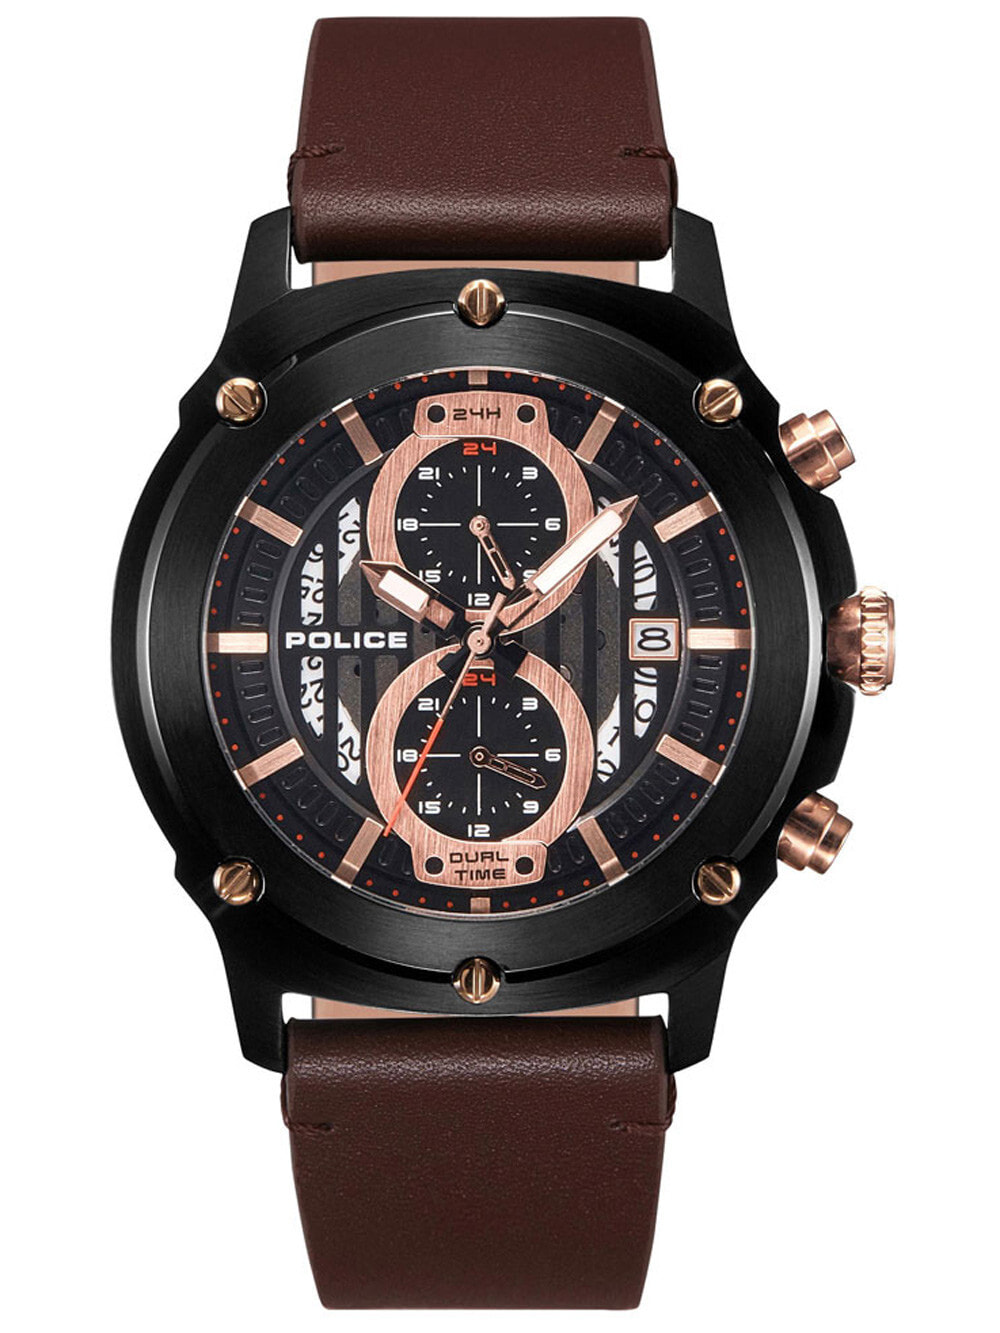 Мужские наручные часы с коричневым кожаным ремешком Police PL15917JSB.02A Lulworth 47mm 5ATM